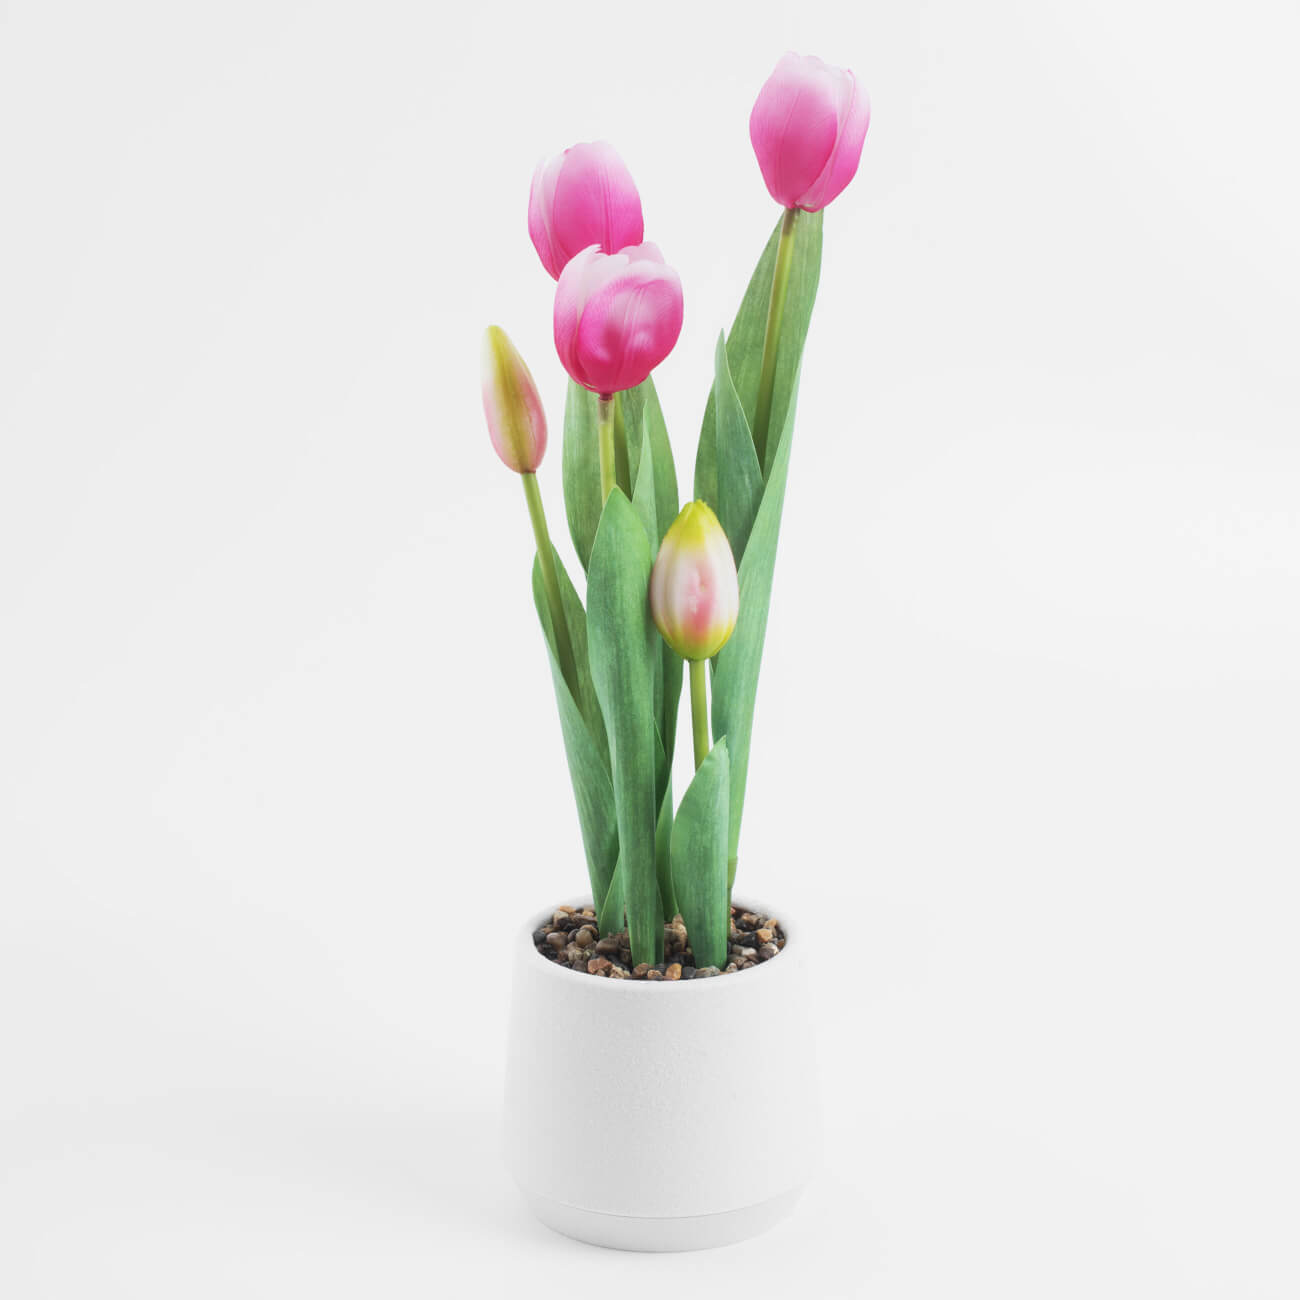 Растение искусственное, 36 см, в горшке, полиэстер/пластик, Розовые тюльпаны, Tulip garden - фото 1